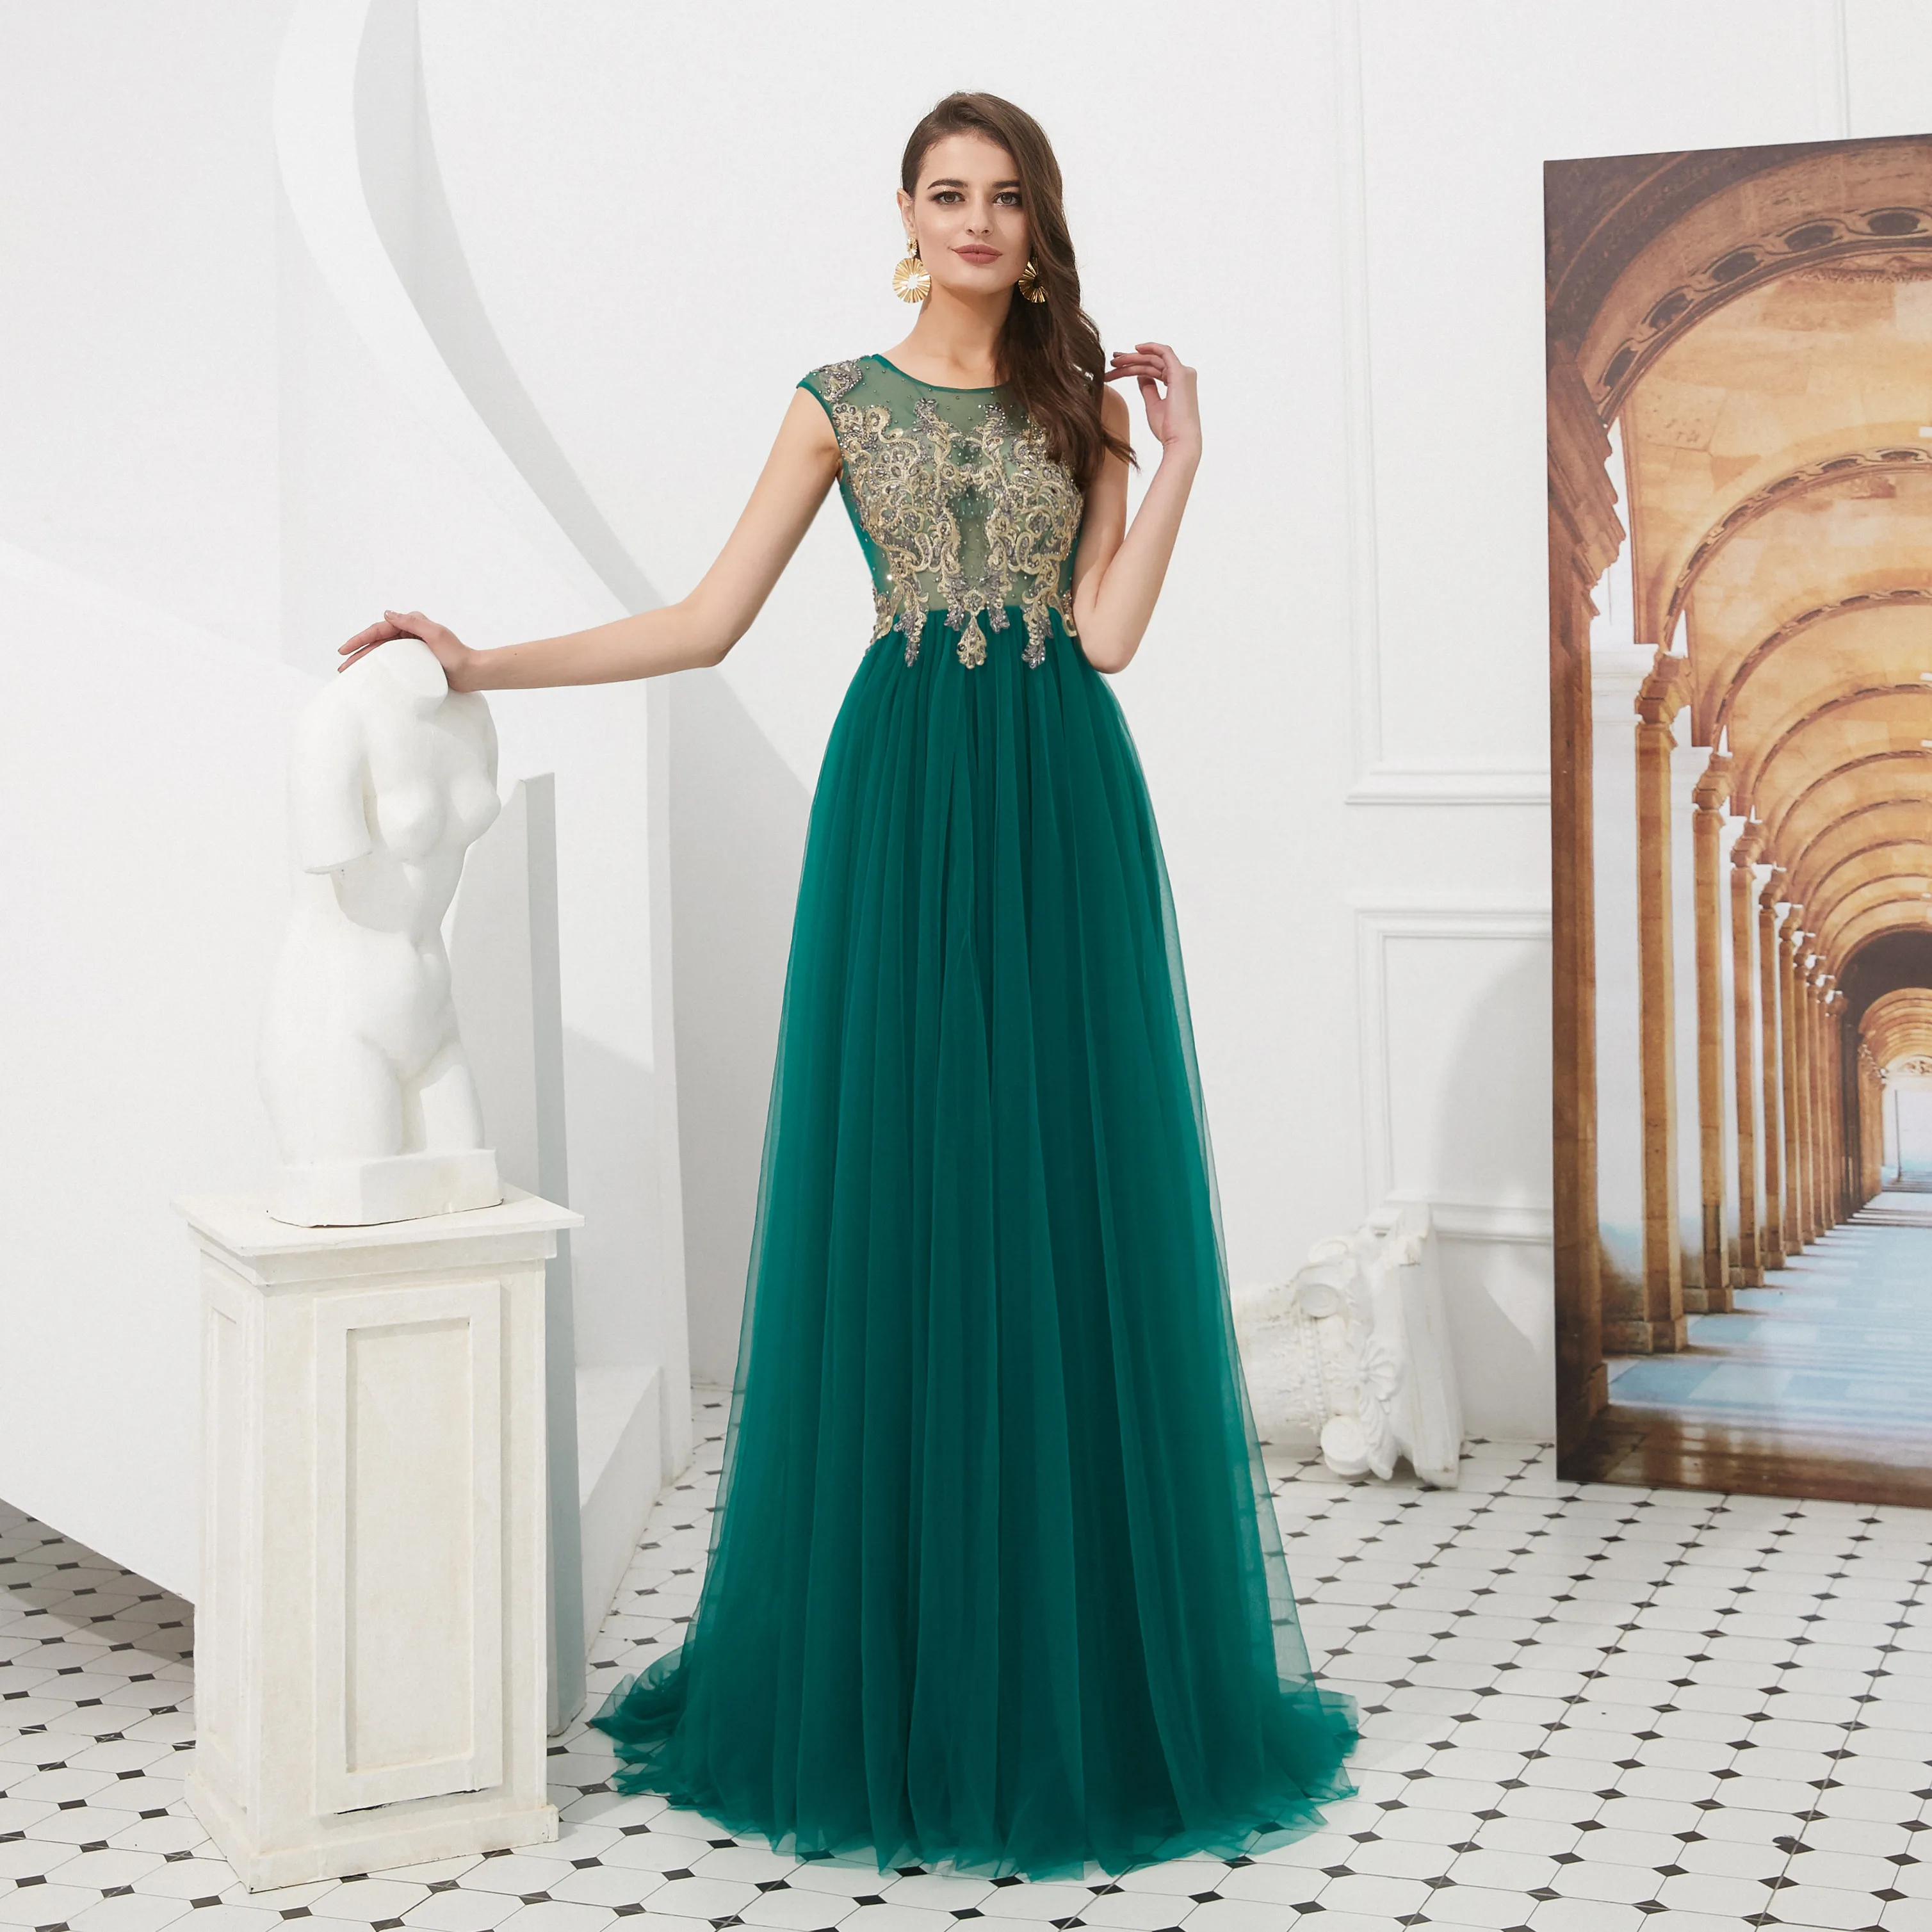 Billig 2019 grün EINE Linie Prom Kleid mit Gold Spitze Applique Kaftan Mode Robe de Soiree Dubai Abendkleid Perlen Muslimischen abaya Gece